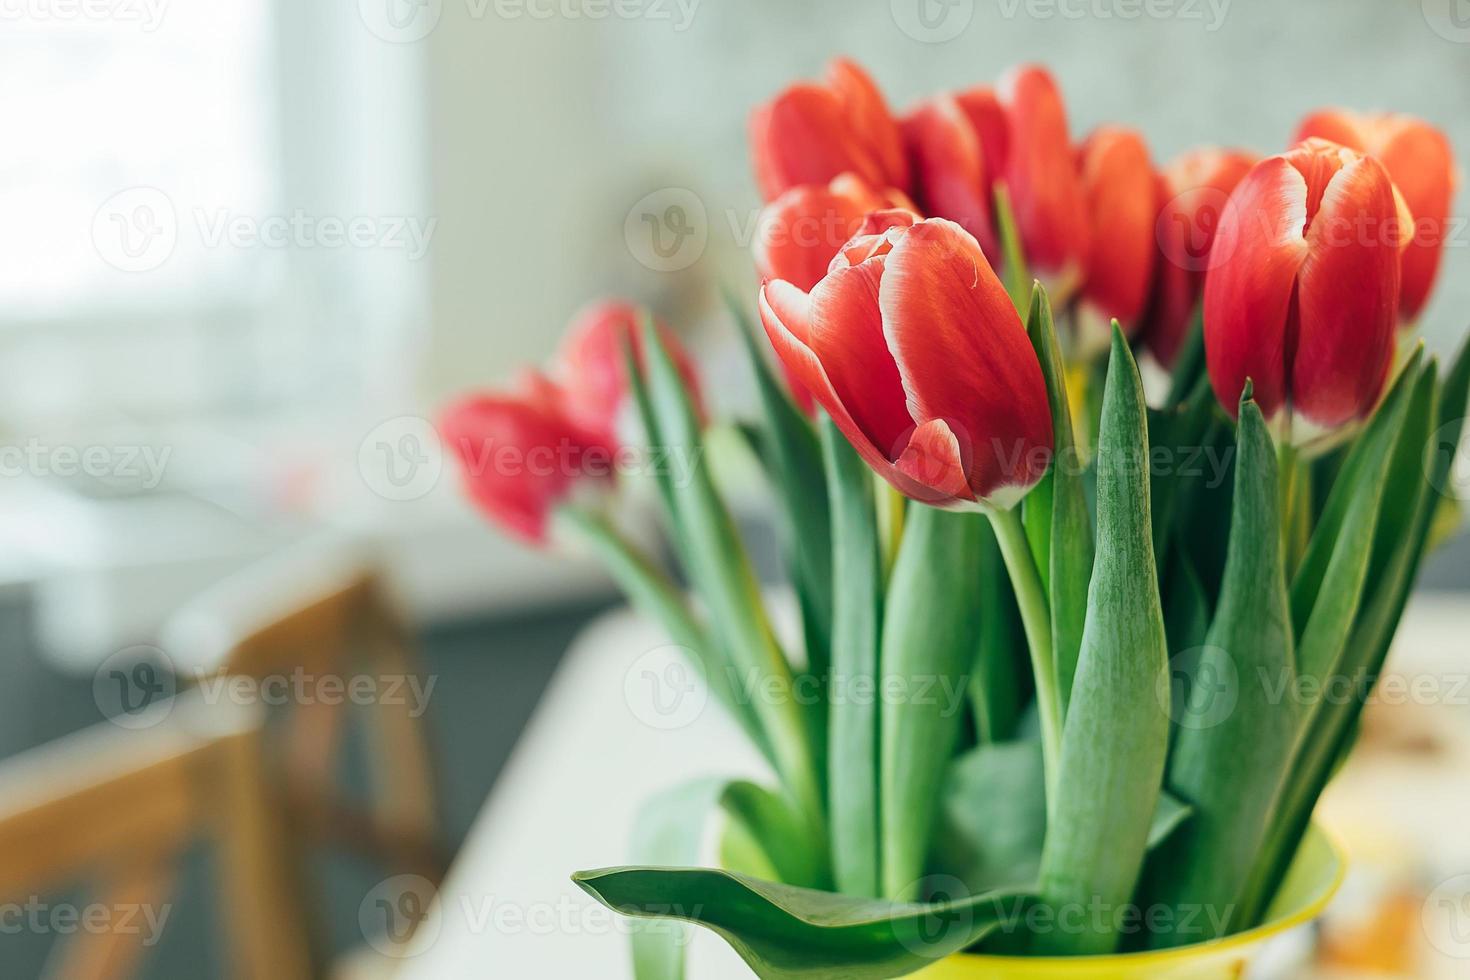 buquê fresco de tulipas vermelhas em um vaso na mesa da cozinha. estilo de vida, conceito de férias. copie o espaço. foto